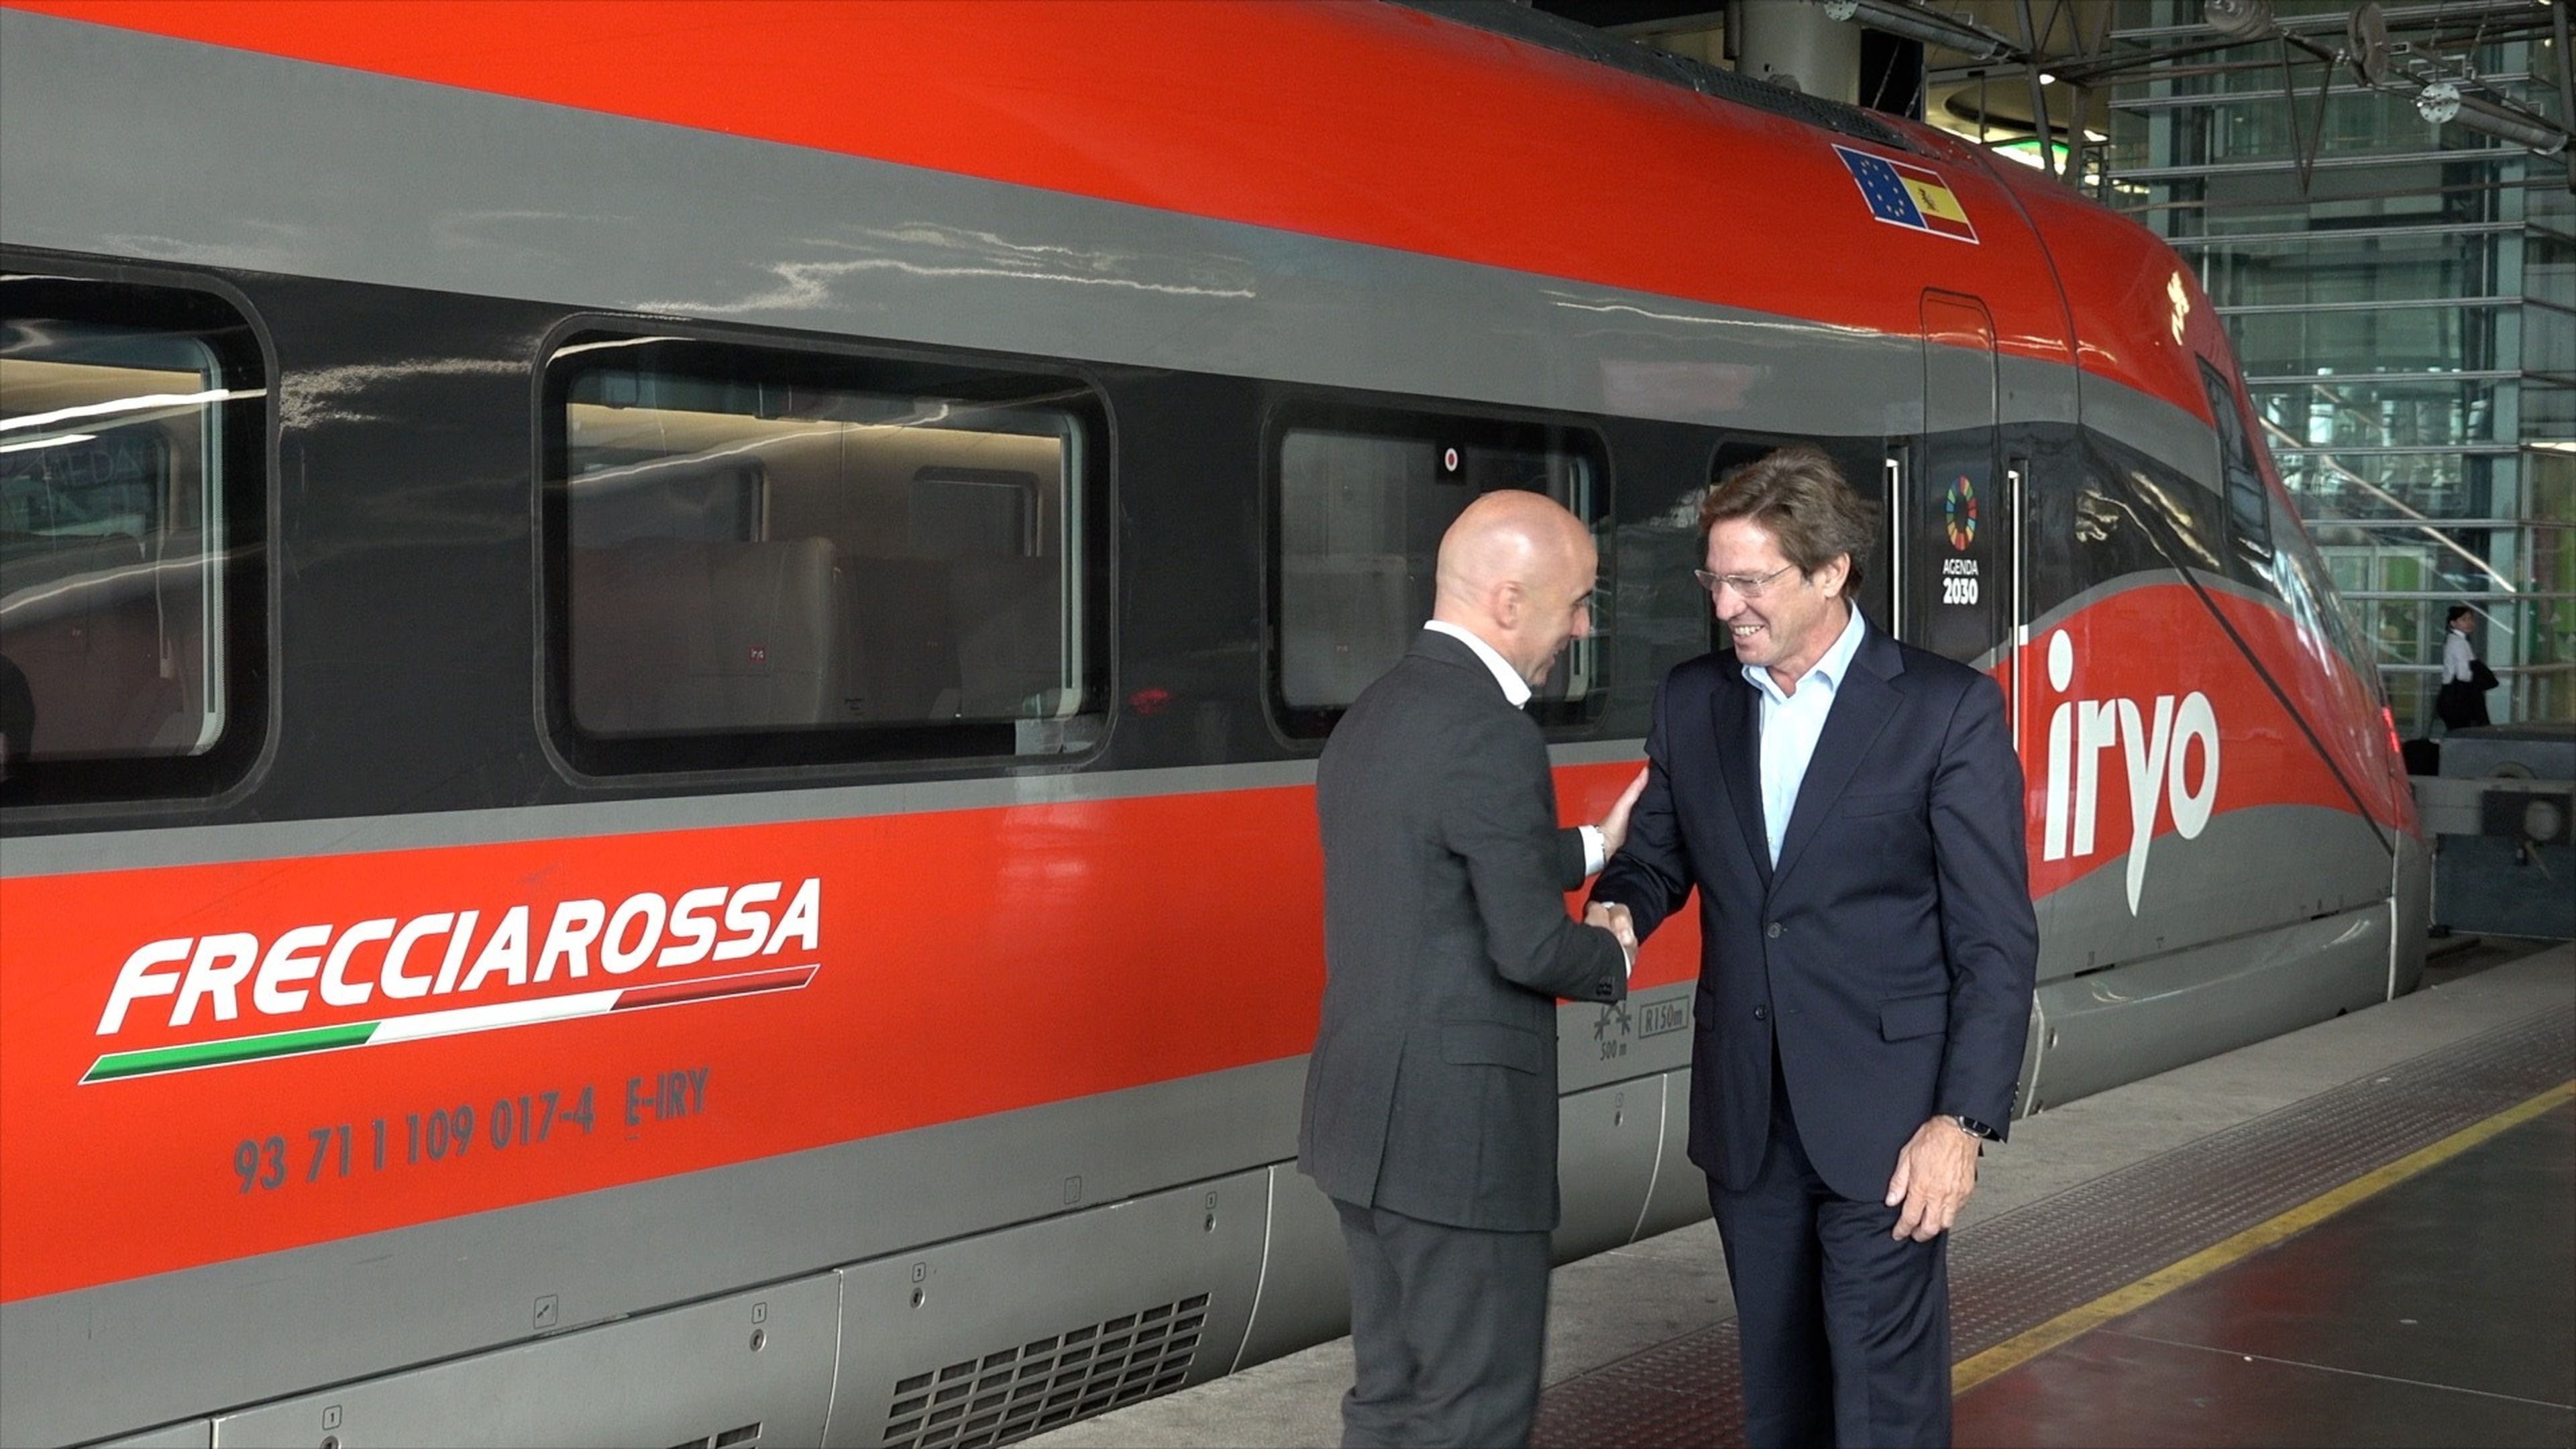 Joan Jordi Vallverdú y Simone Gorini se saludan frente a uno de los trenes de iryo.